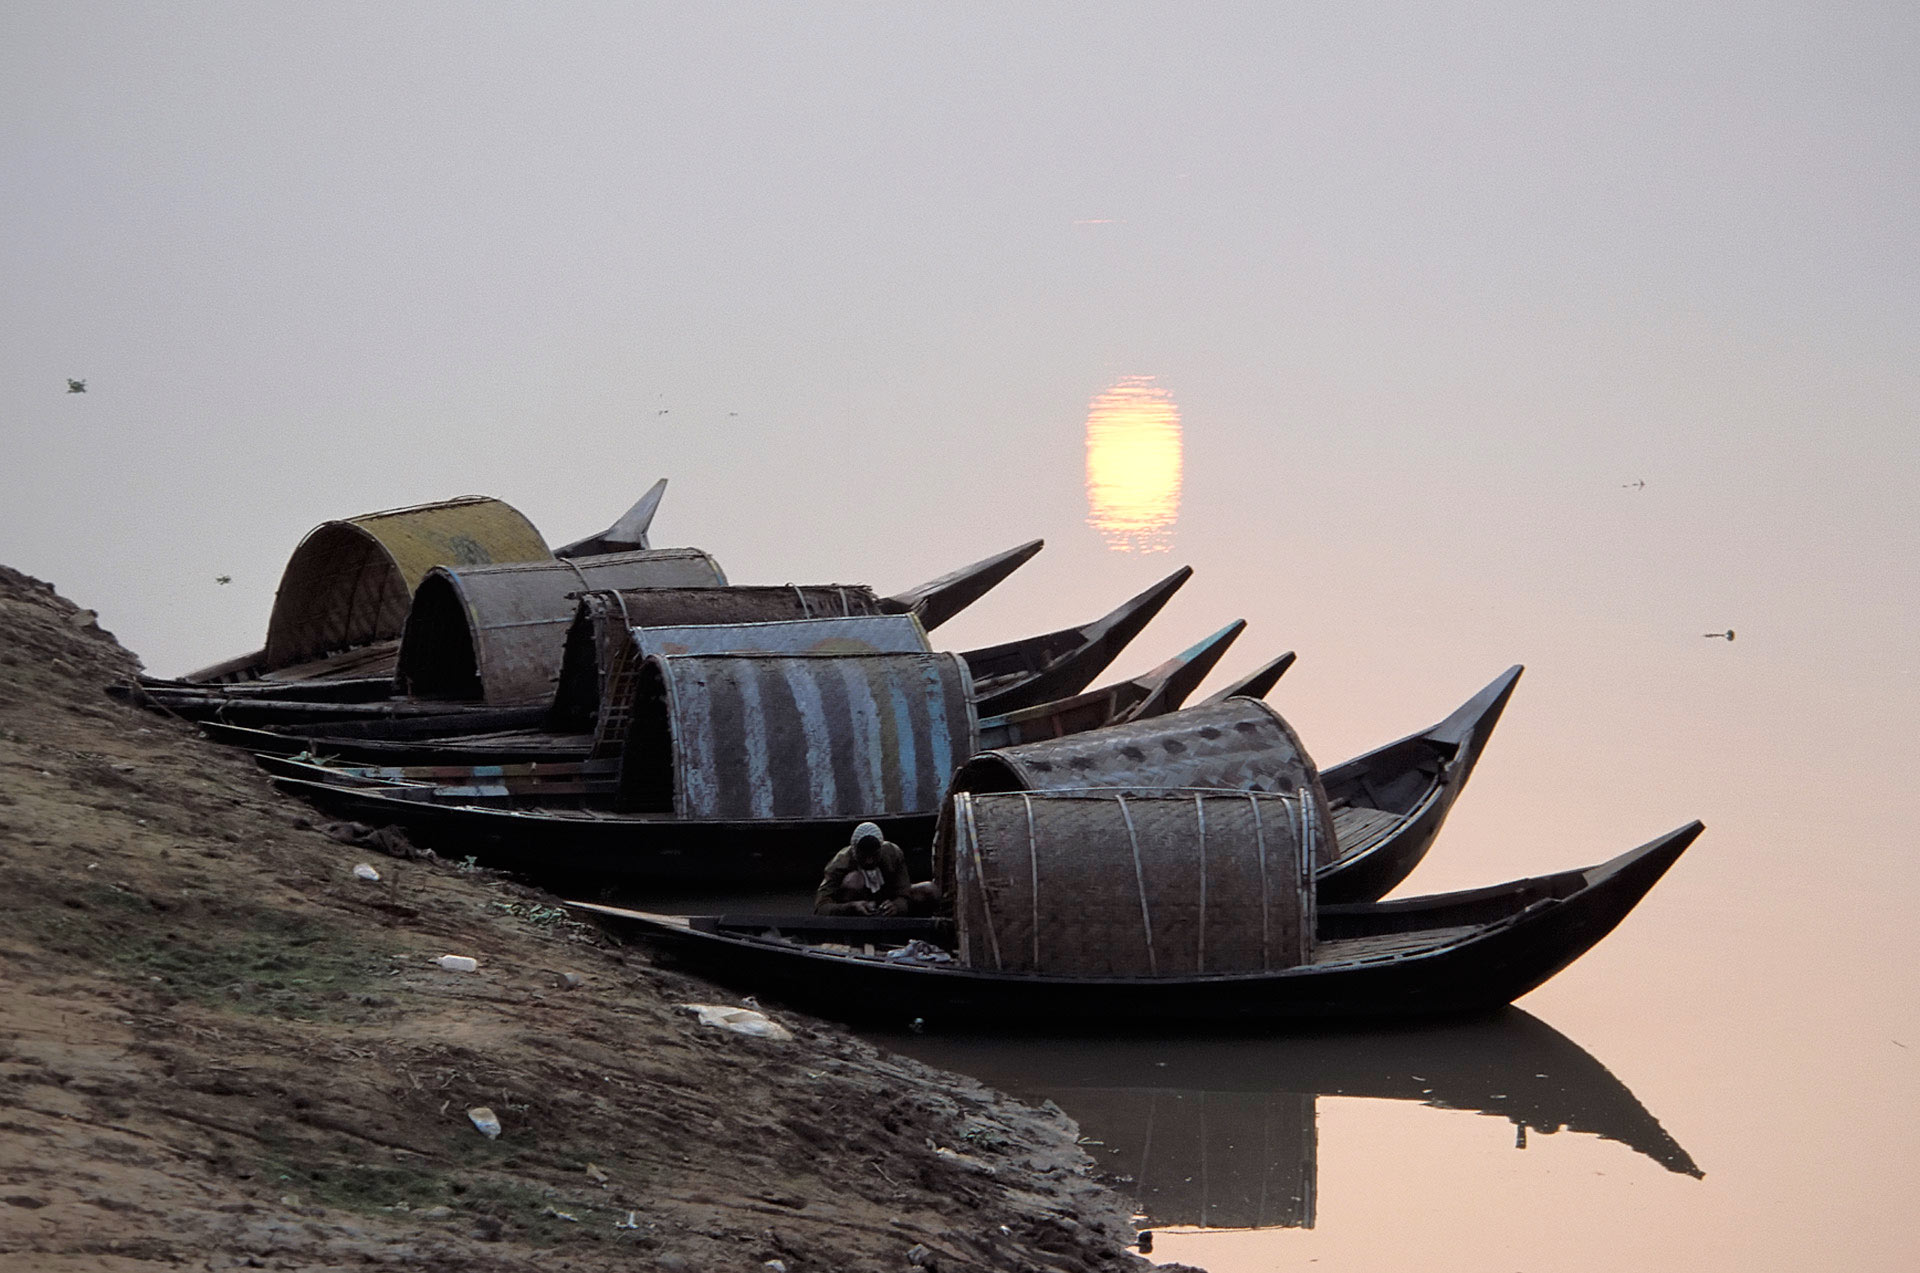 Boats on the Bangai River at sunset, Dhaka, Bangladesh